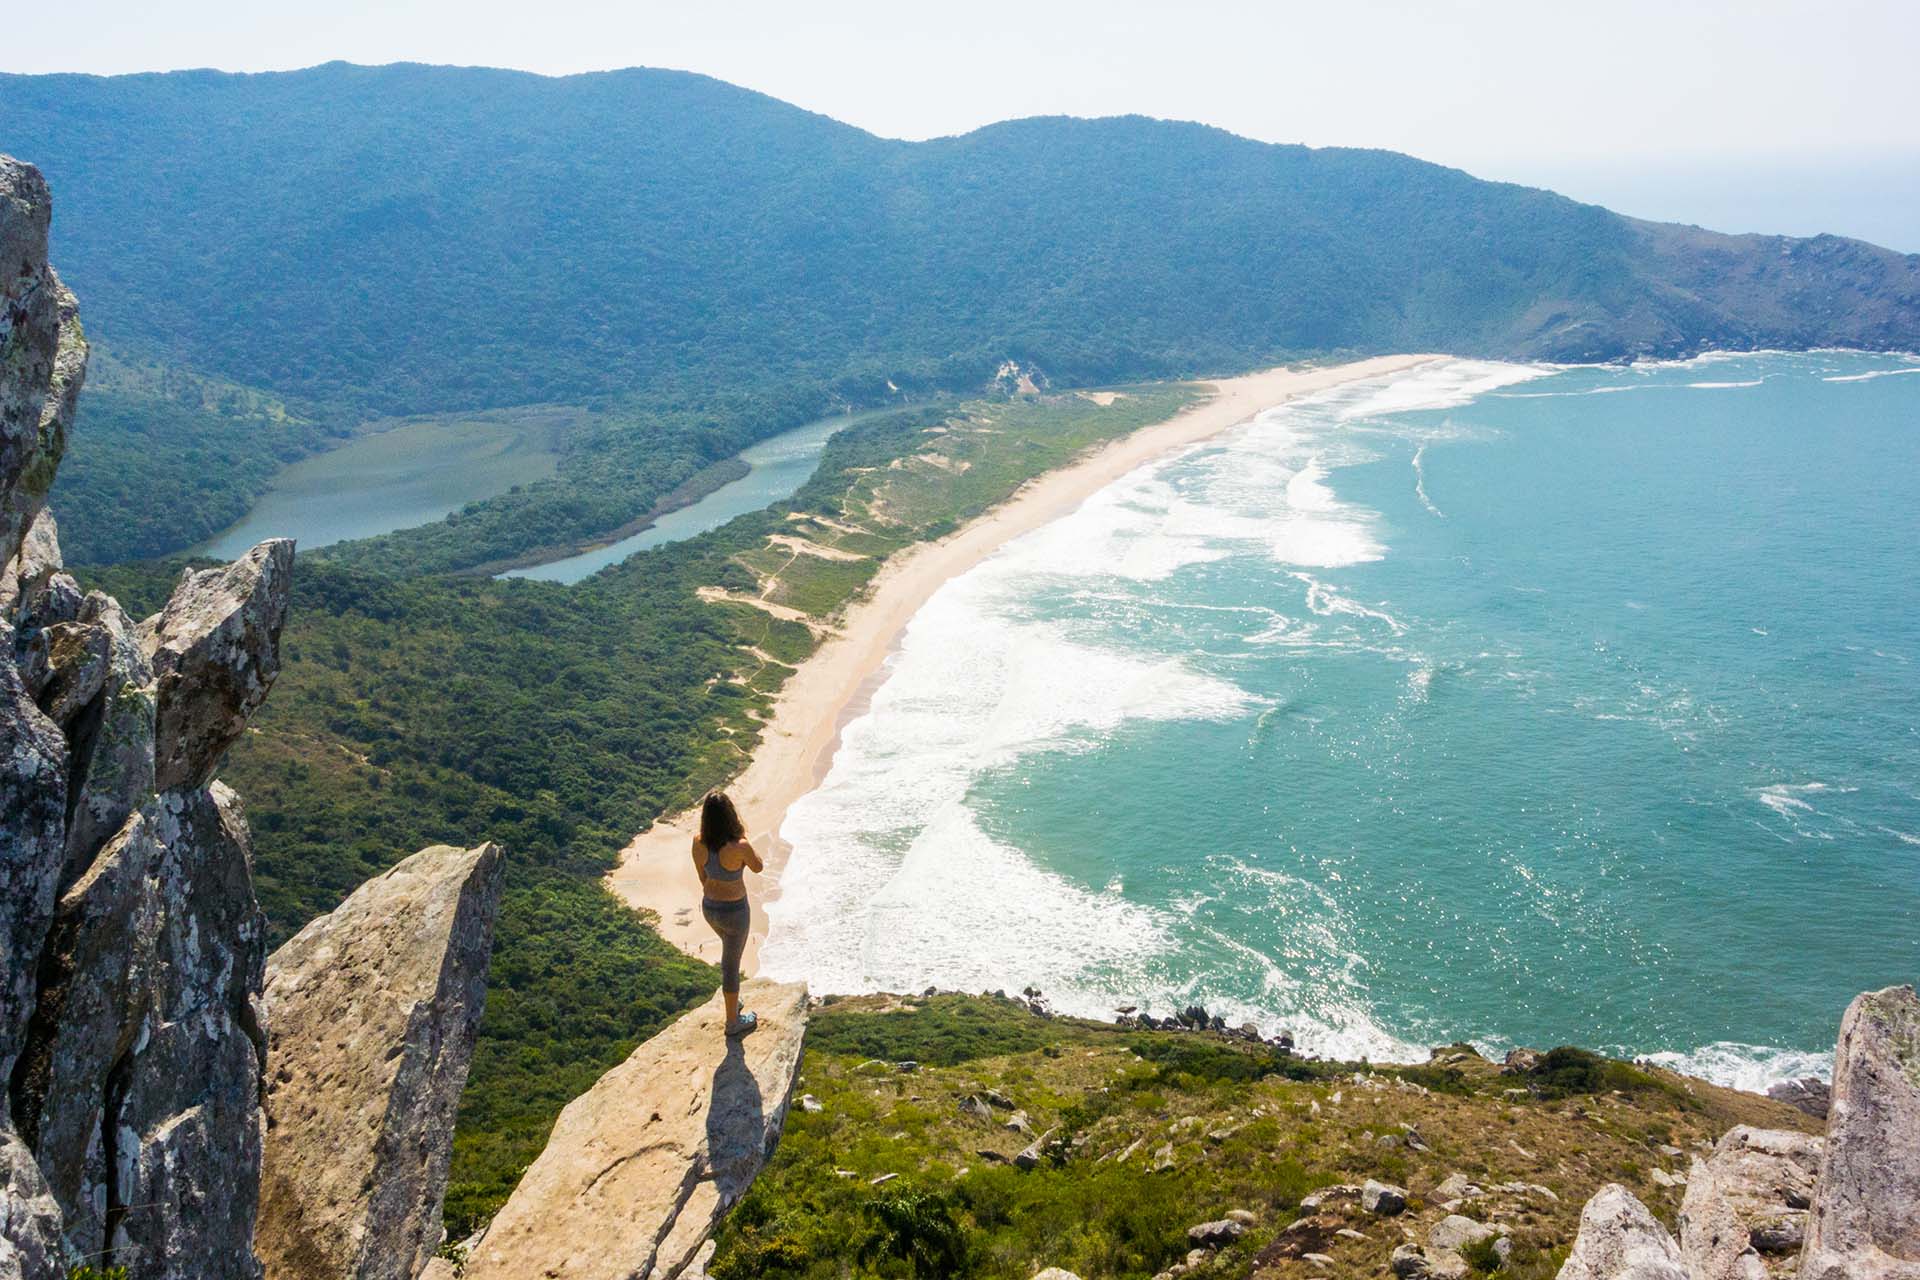 Praias paradisíacas, surfe e natureza em Florianópolis/SC